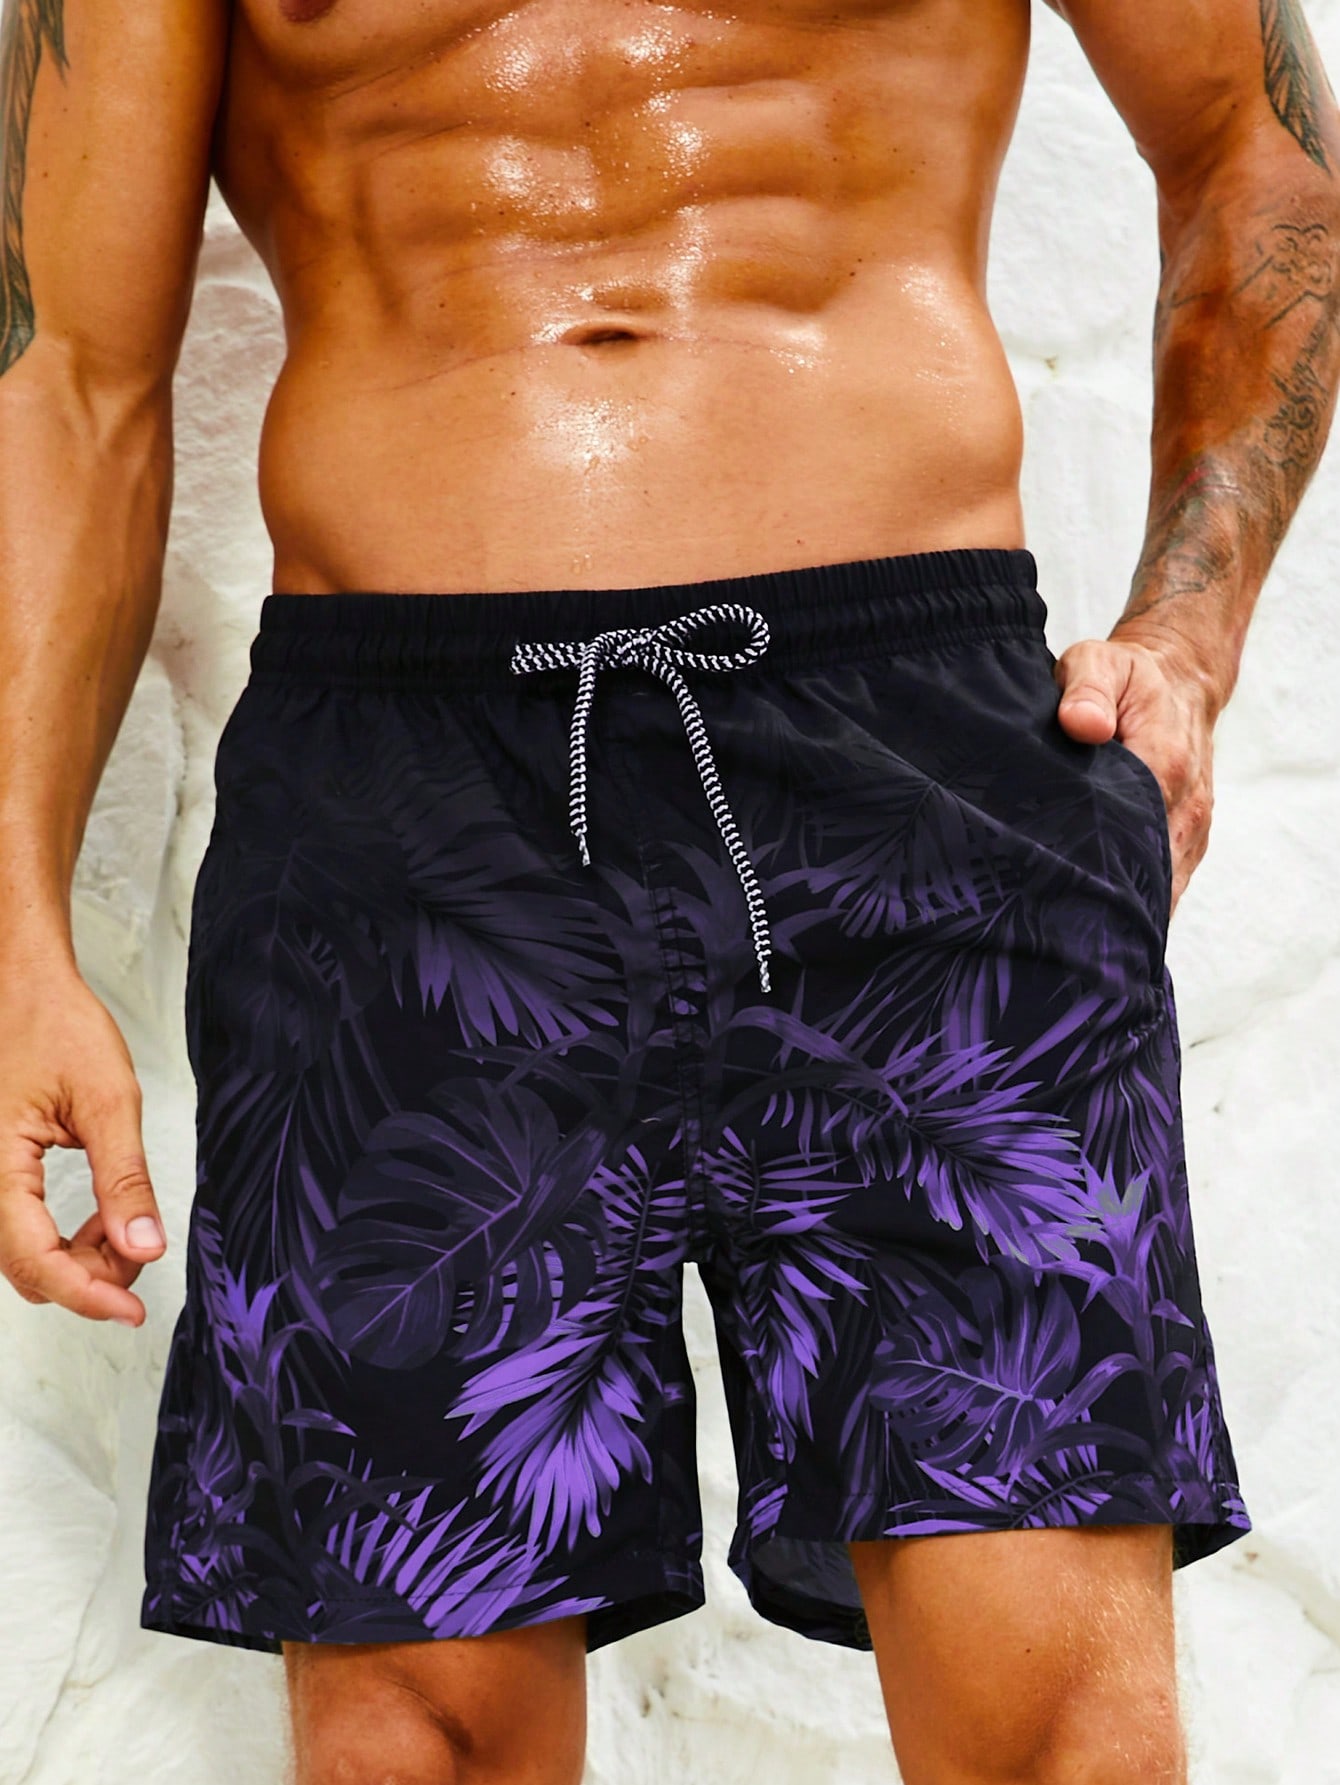 Мужские шорты Manfinity с принтом тропических растений для пляжной одежды, многоцветный